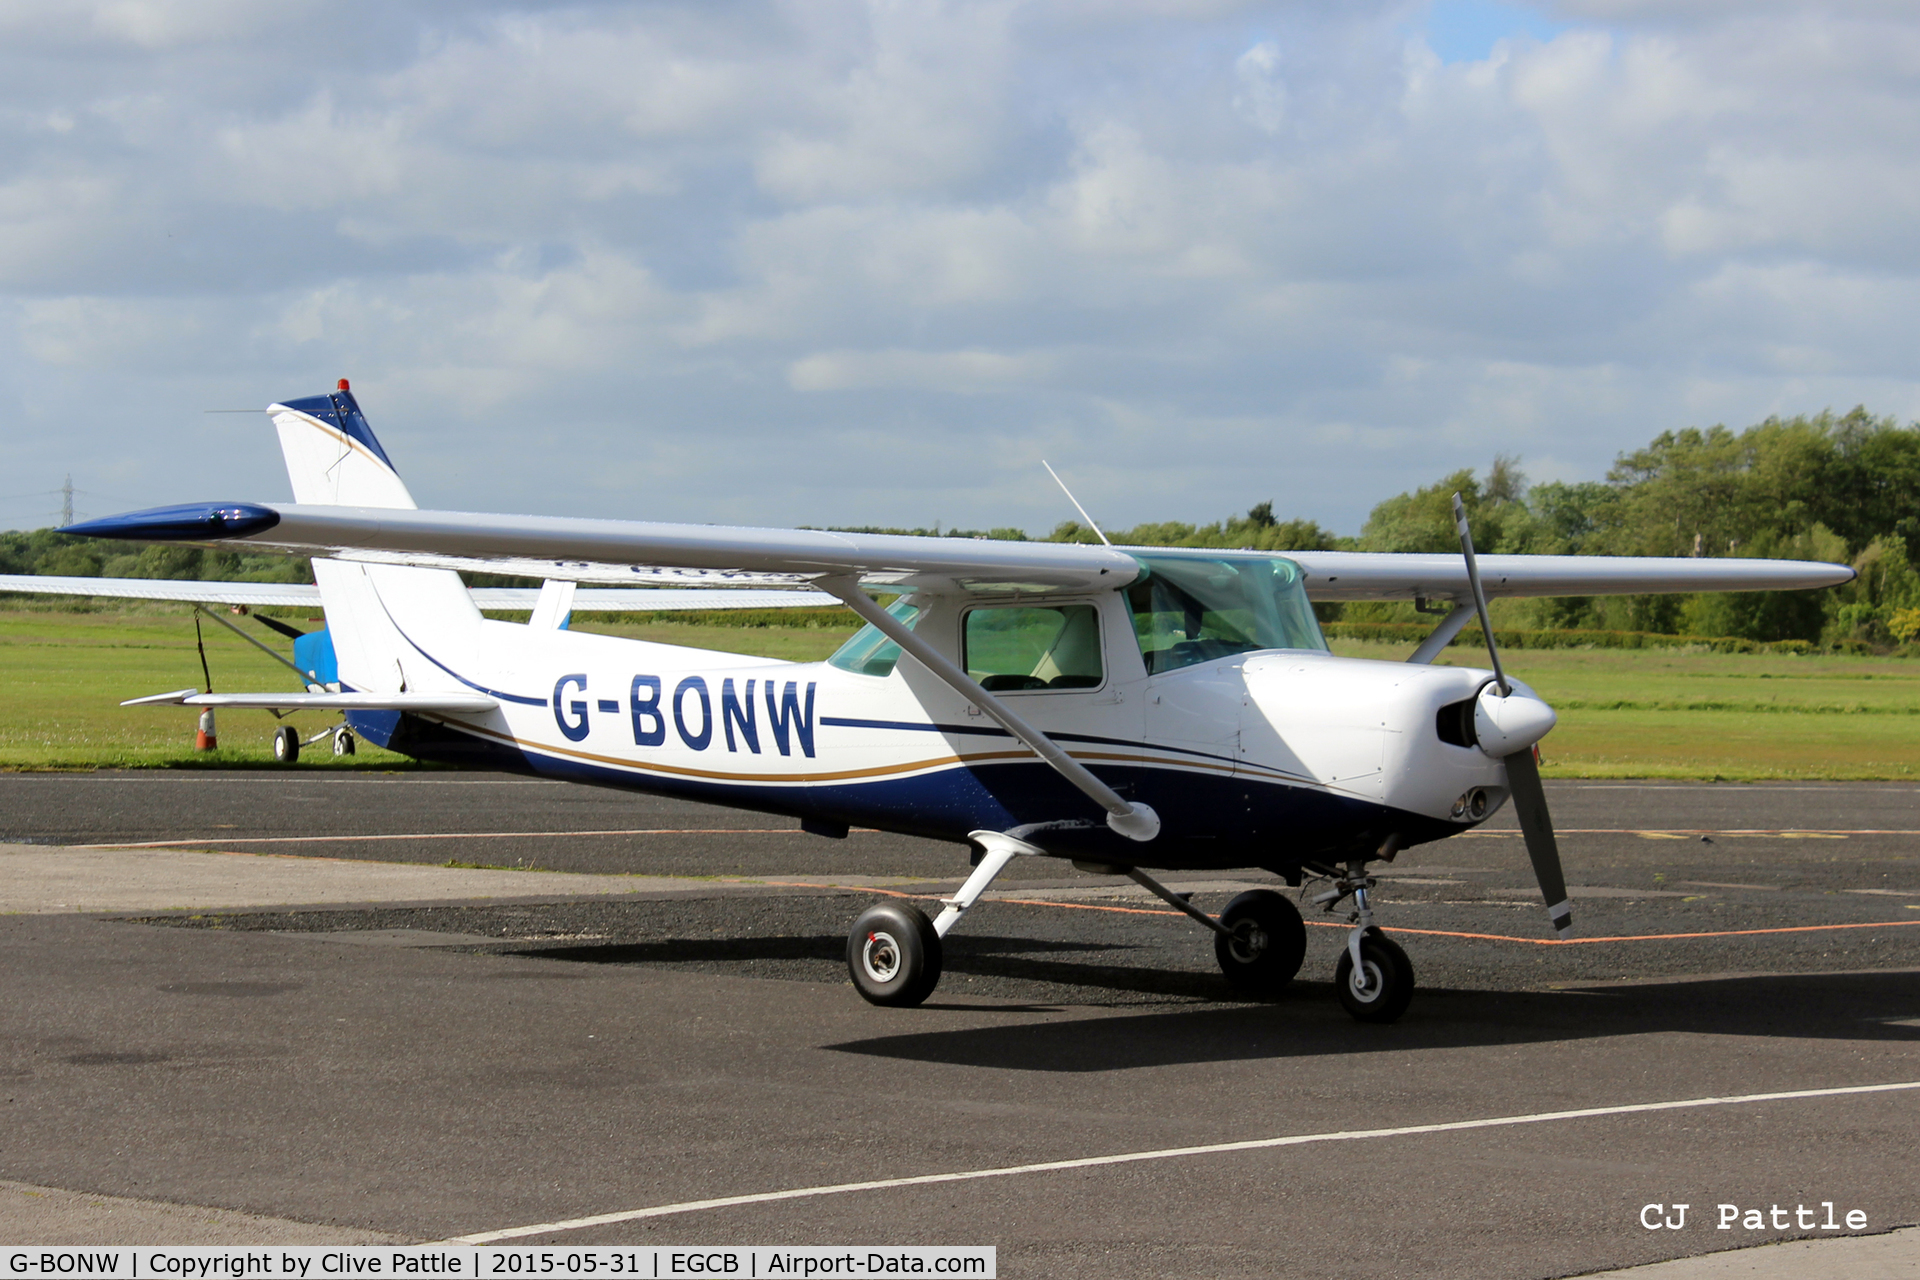 G-BONW, 1978 Cessna 152 C/N 152-80401, Parked up at Barton, EGCB